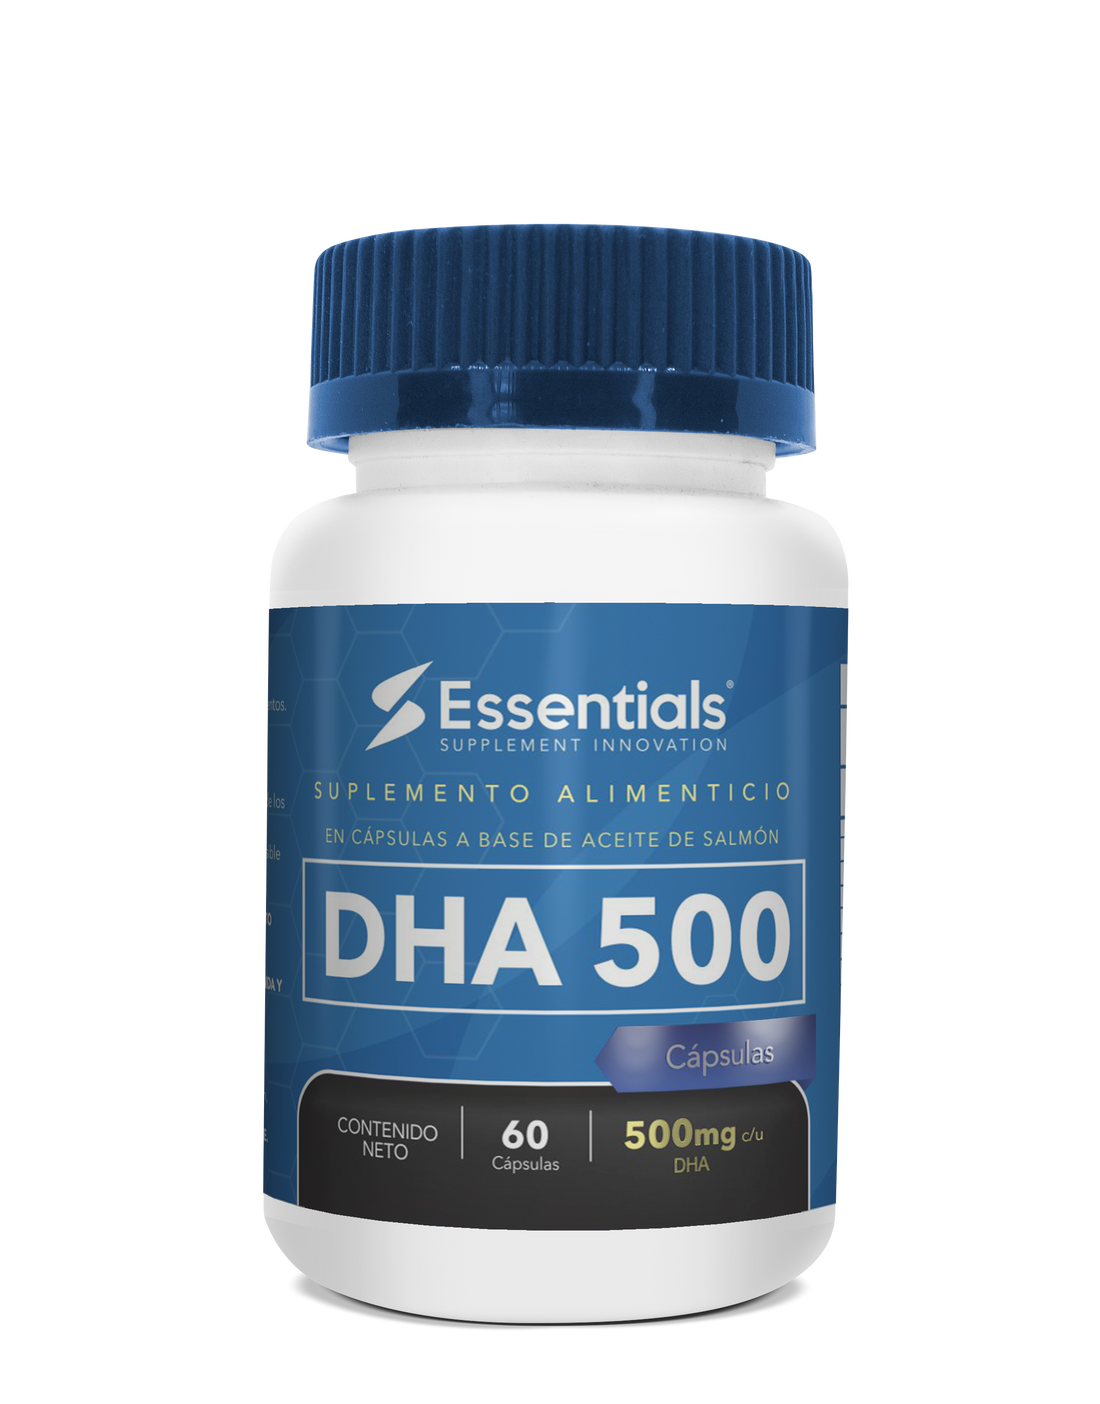 DHA 500